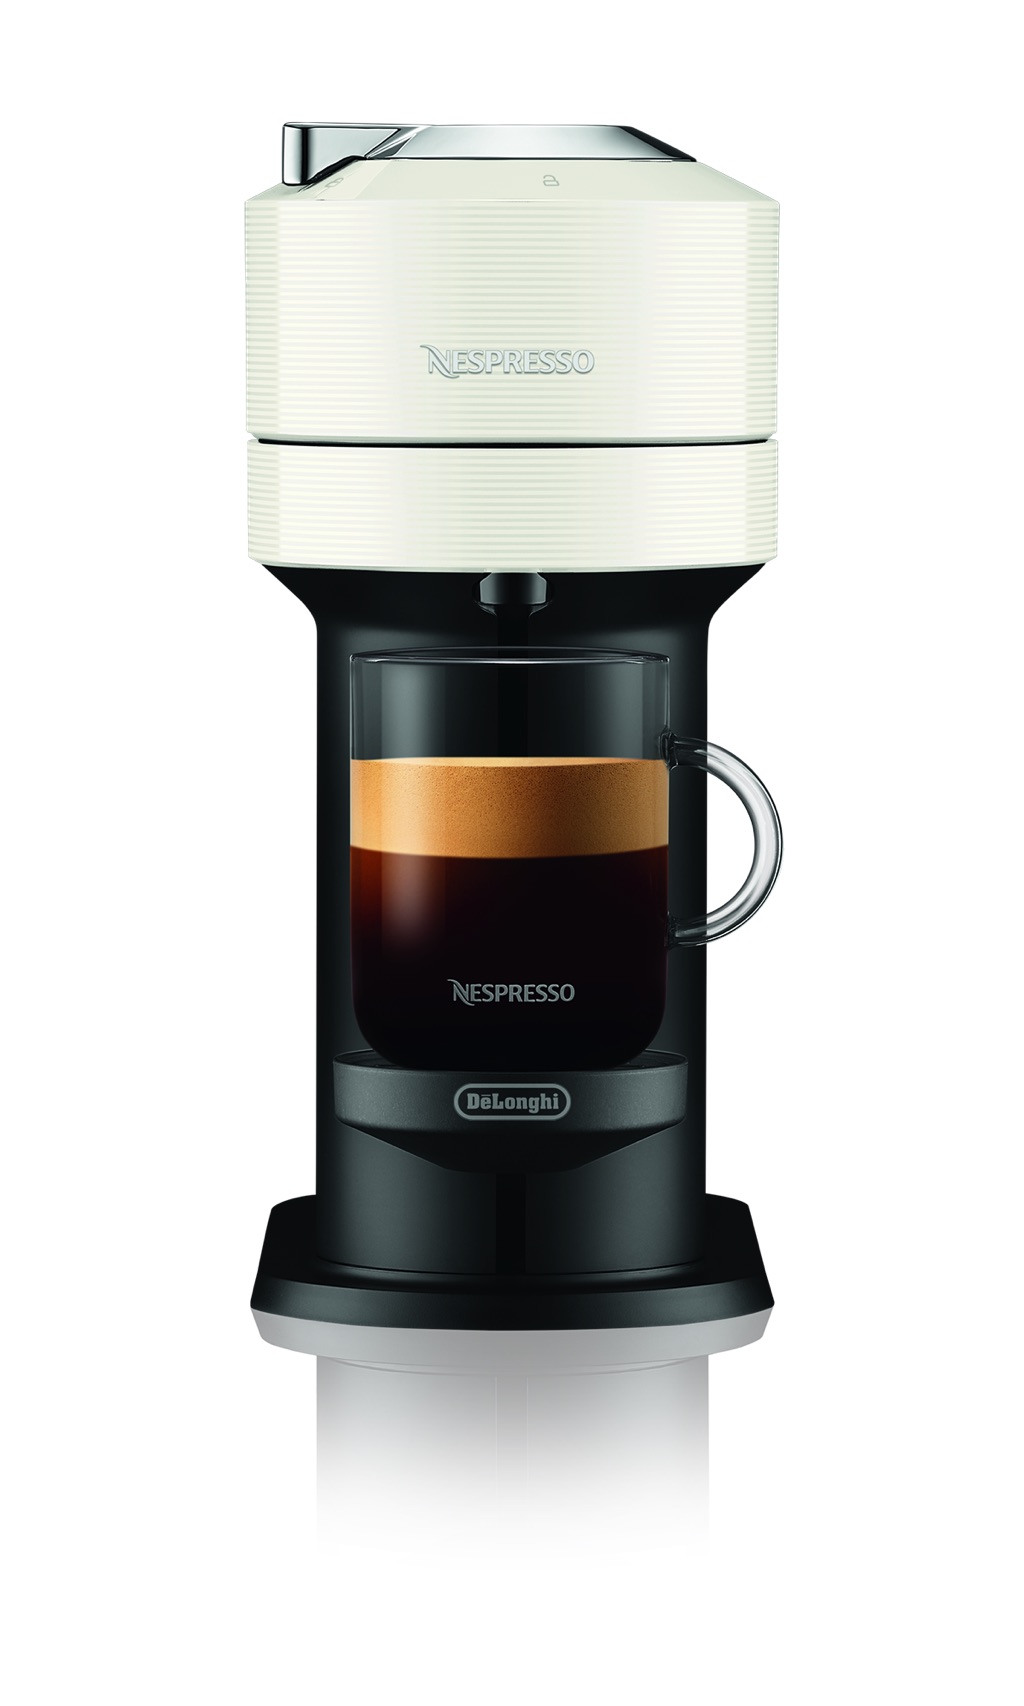 „Vertuo Next“ ist gedacht für das Kapselsystem von Nespresso. Jetzt ist sie auch für größere Kaffeerunden geeignet. Das funktioniert mit der ergiebigen „Vertuo Carafe Kapsel“, die bis zu ca. 500 ml Kaffee ergibt. Die Maschine ist von De’Longhi.